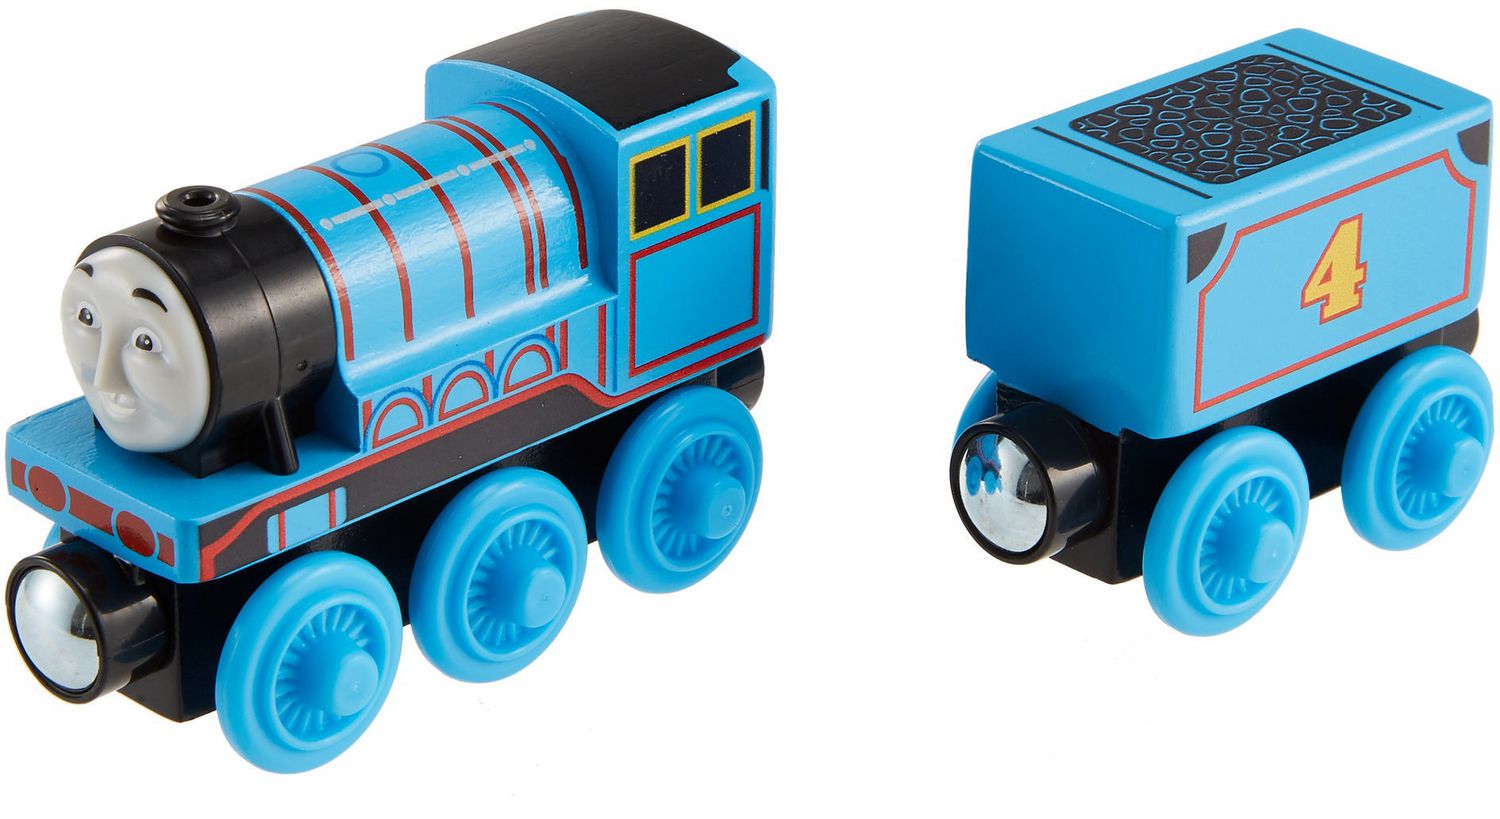 gordon train toy